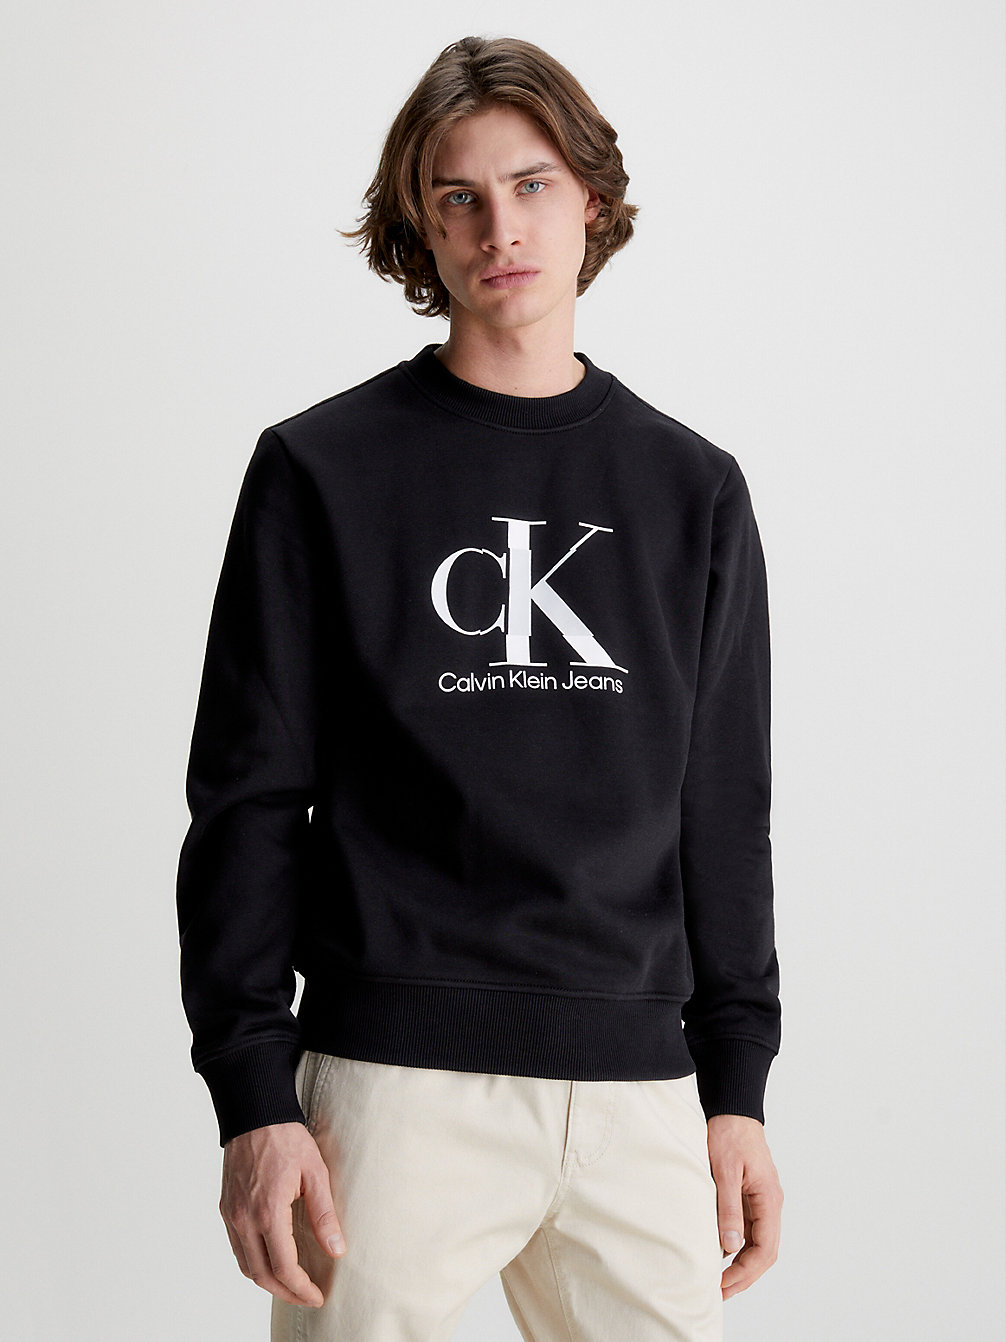 Sweat-Shirt Avec Monogramme > CK BLACK > undefined hommes > Calvin Klein